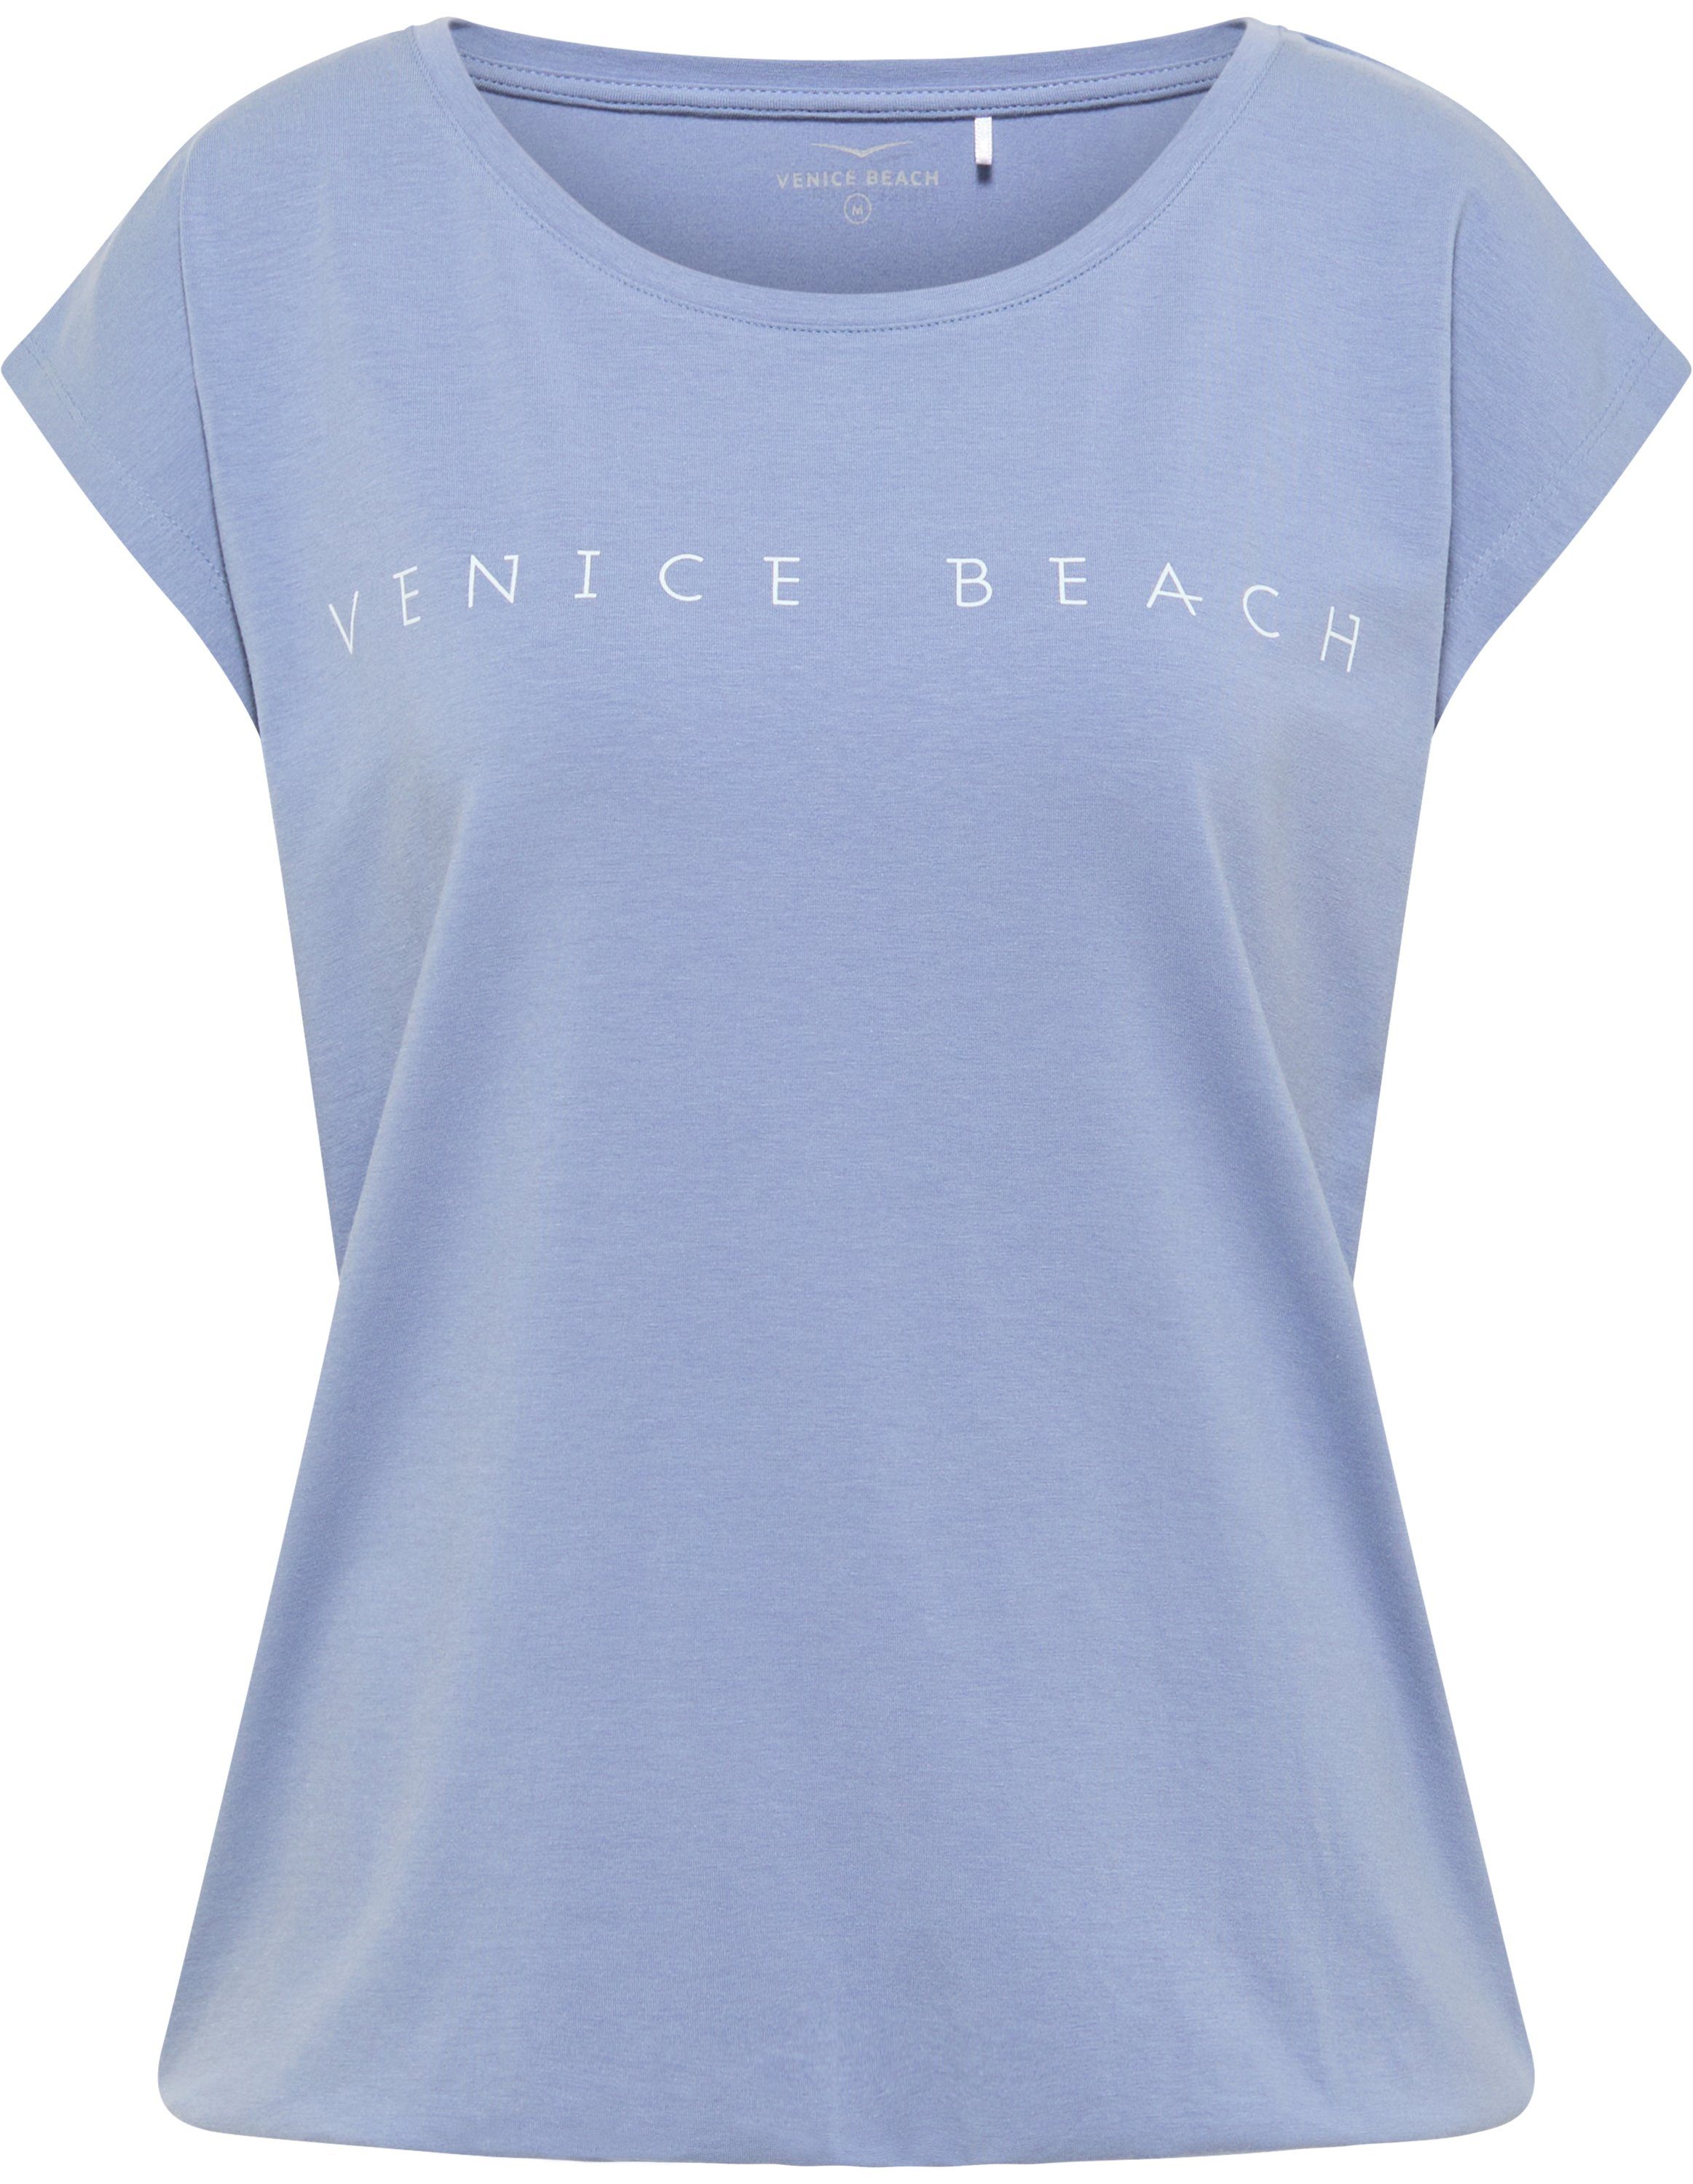 T-Shirt Wonder T-Shirt VB Beach blue delft Venice